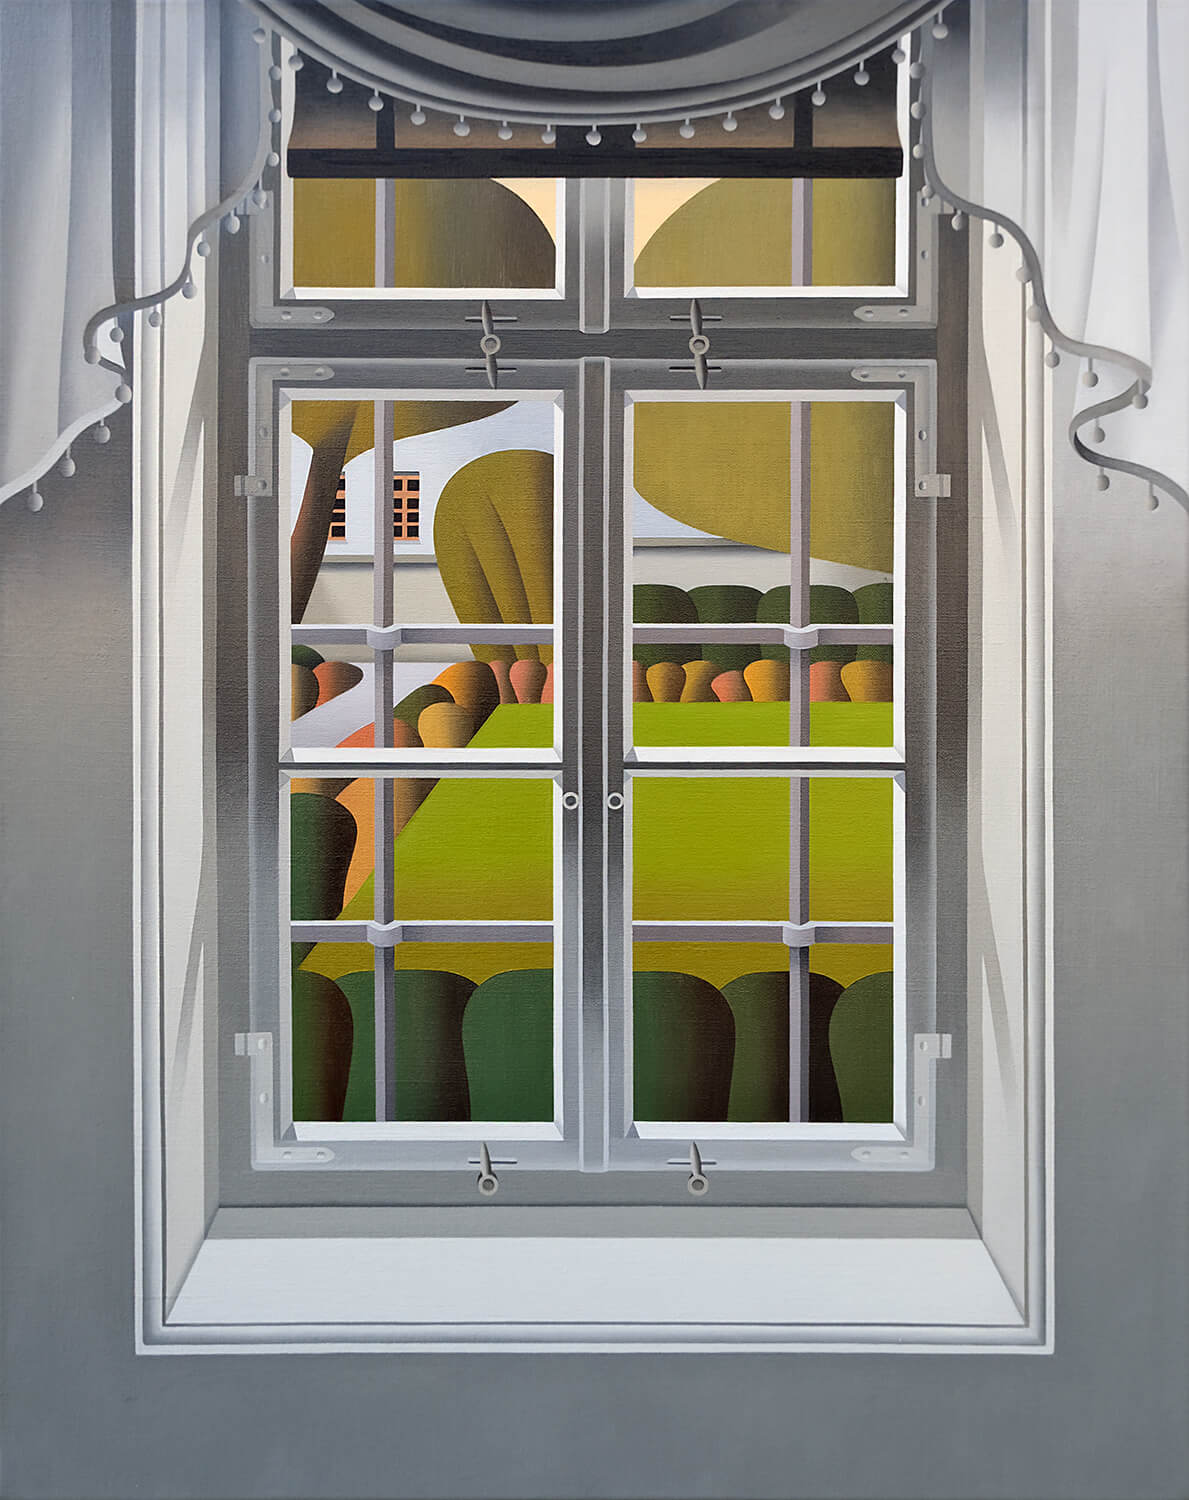 Jan Schüler, Weimar: Blick aus Goethes Wohnhaus in den Garten, 2022, Öl auf Leinwand, 100 x 80 cm